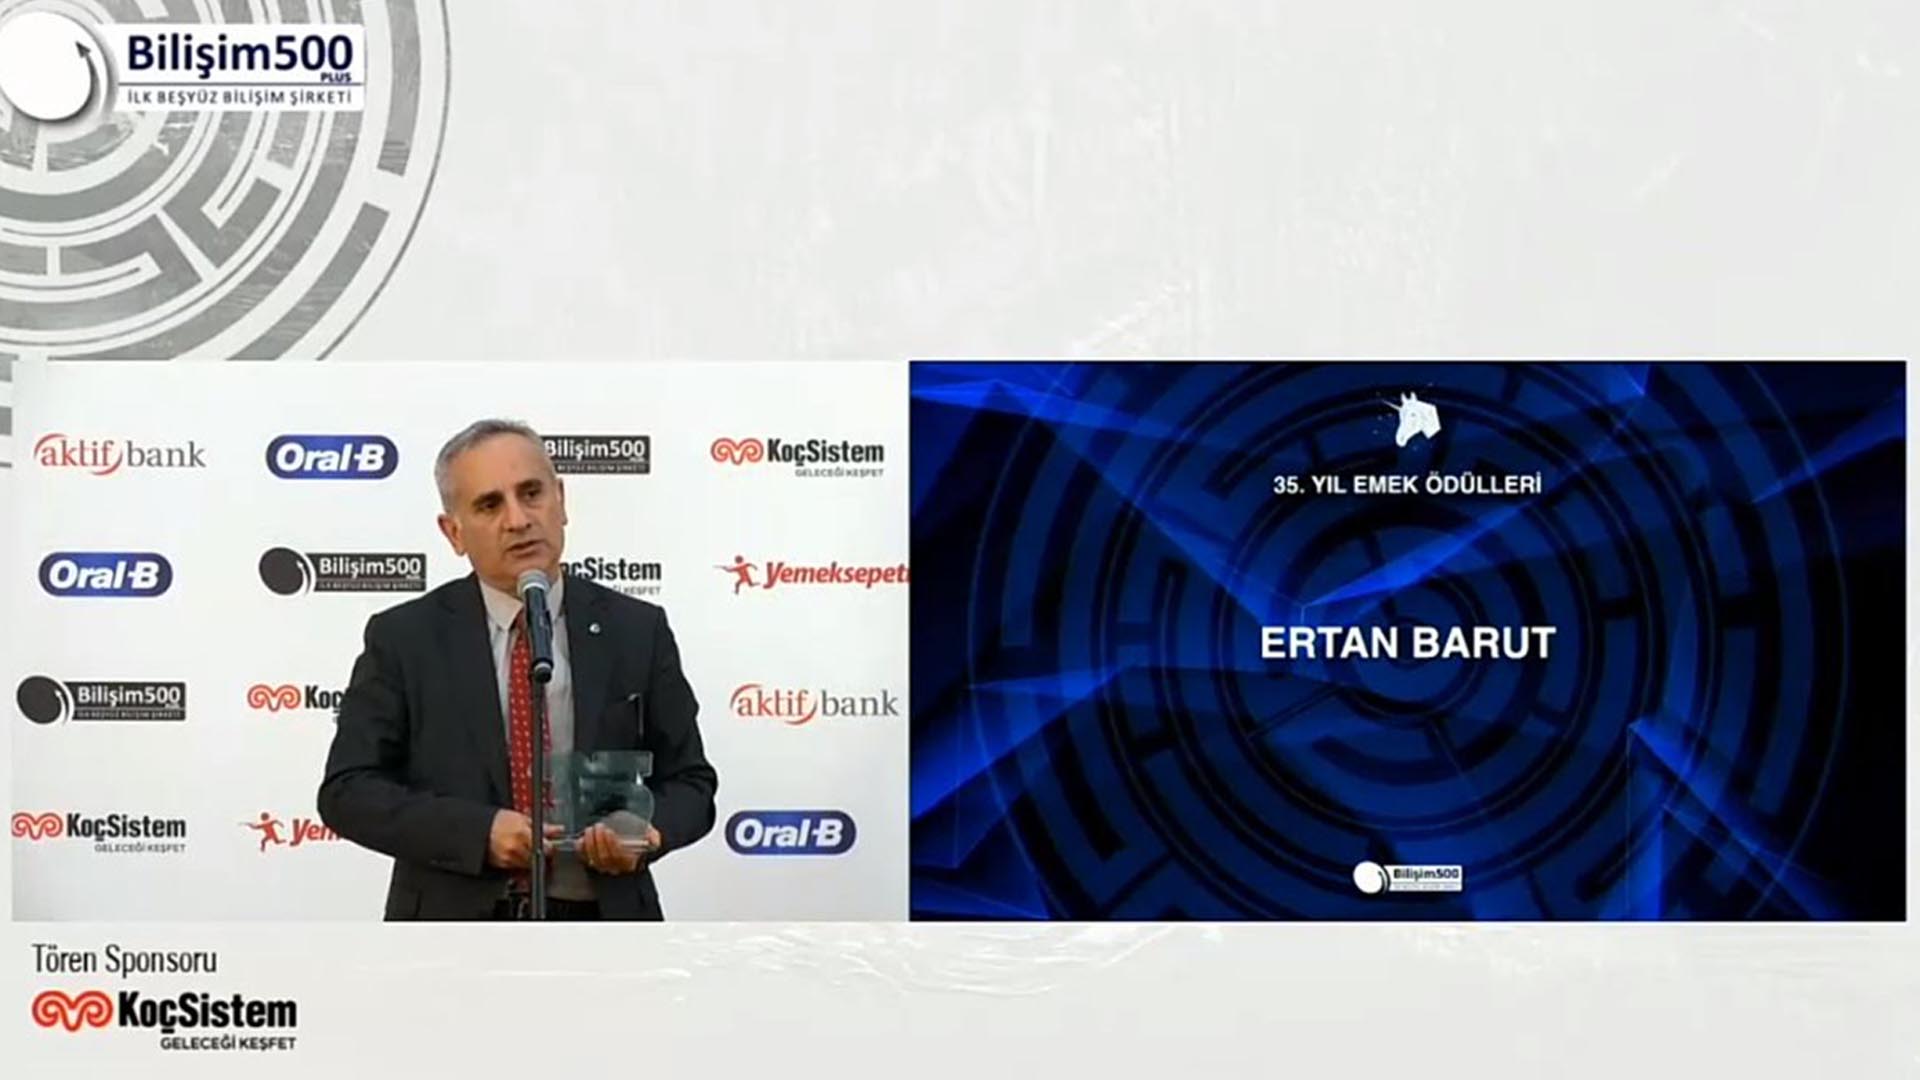 GLOBALNET CEO’su Ertan Barut Türkiye Bilişim Sektöründe 35 Yıl Emek Ödülüne Layık Görüldü